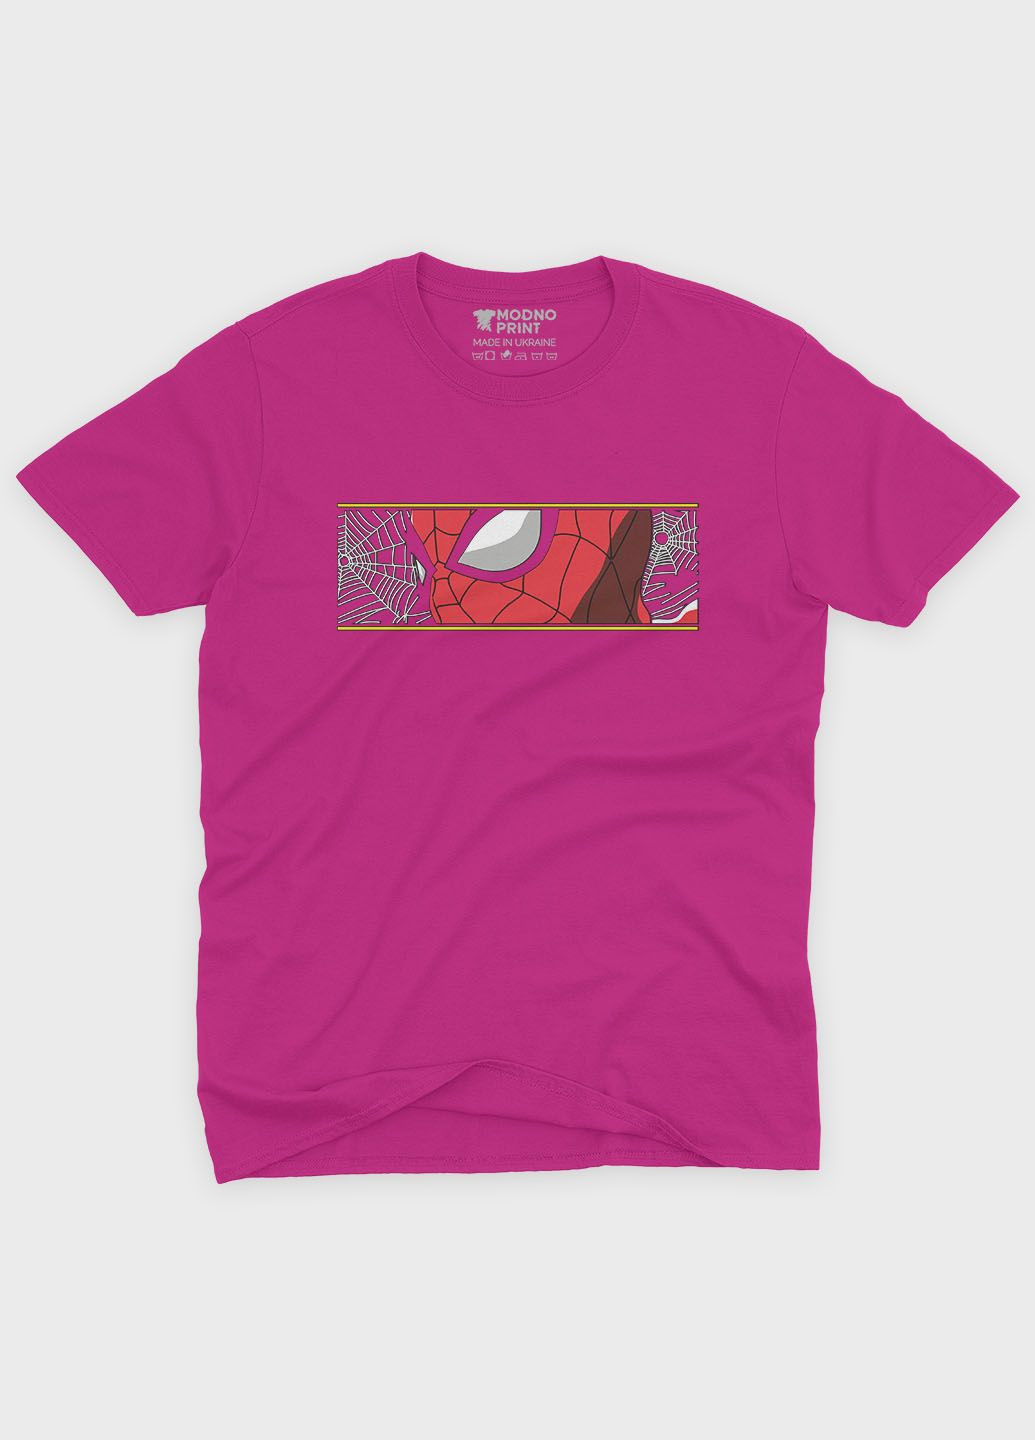 Розовая демисезонная футболка для мальчика с принтом супергероя - человек-паук (ts001-1-fuxj-006-014-008-b) Modno